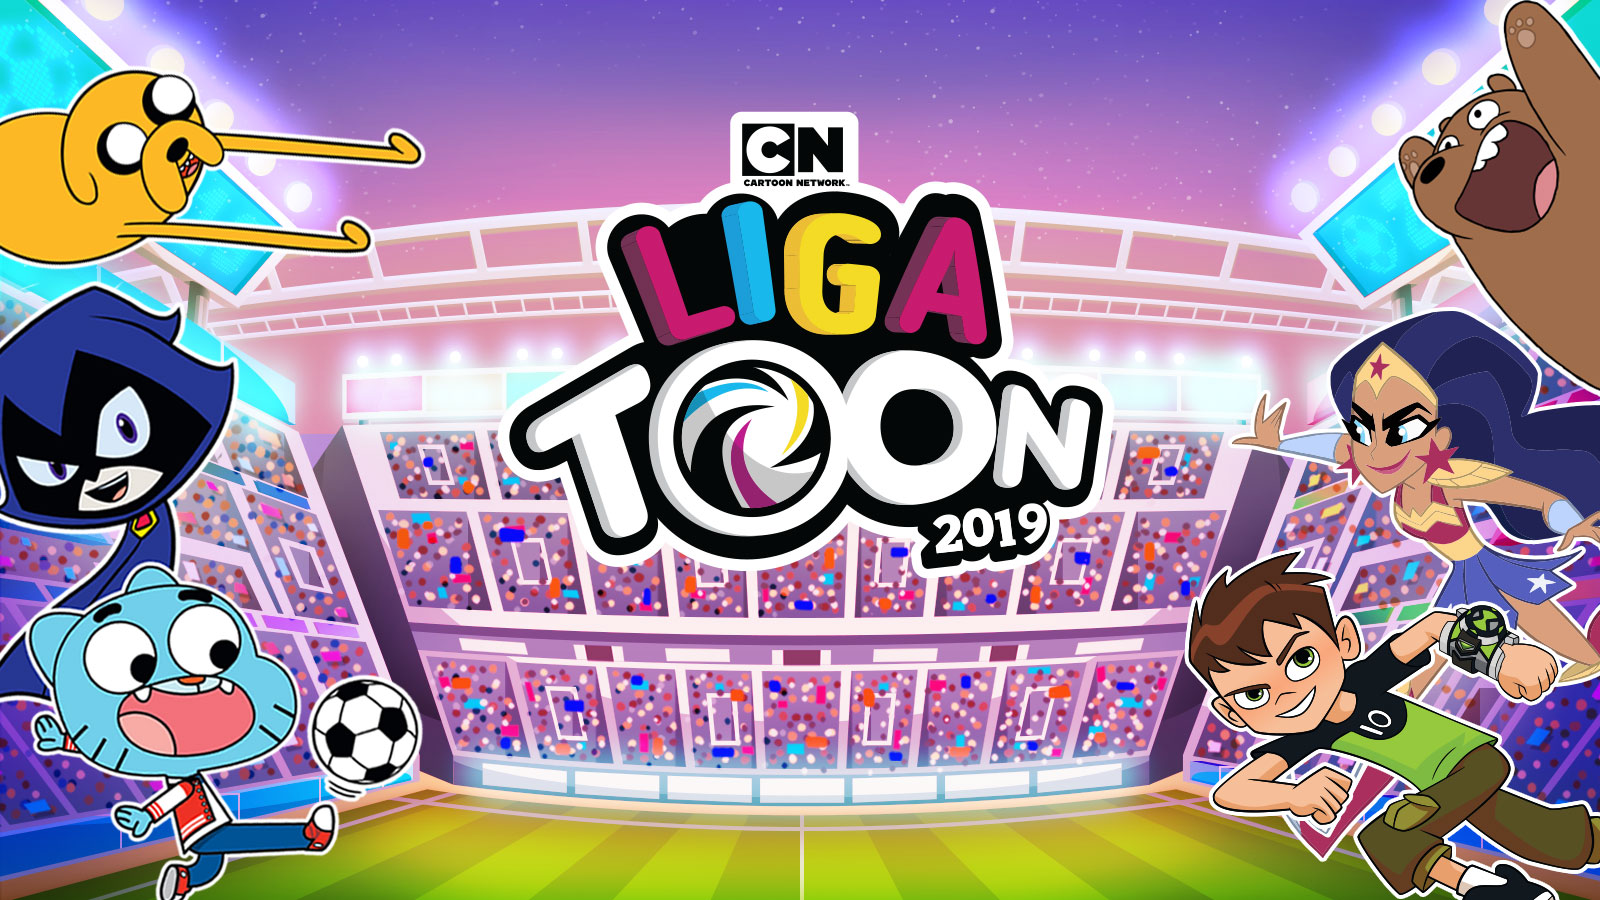 Cartoon Network se alinha à Copa e promove torneio de futebol em